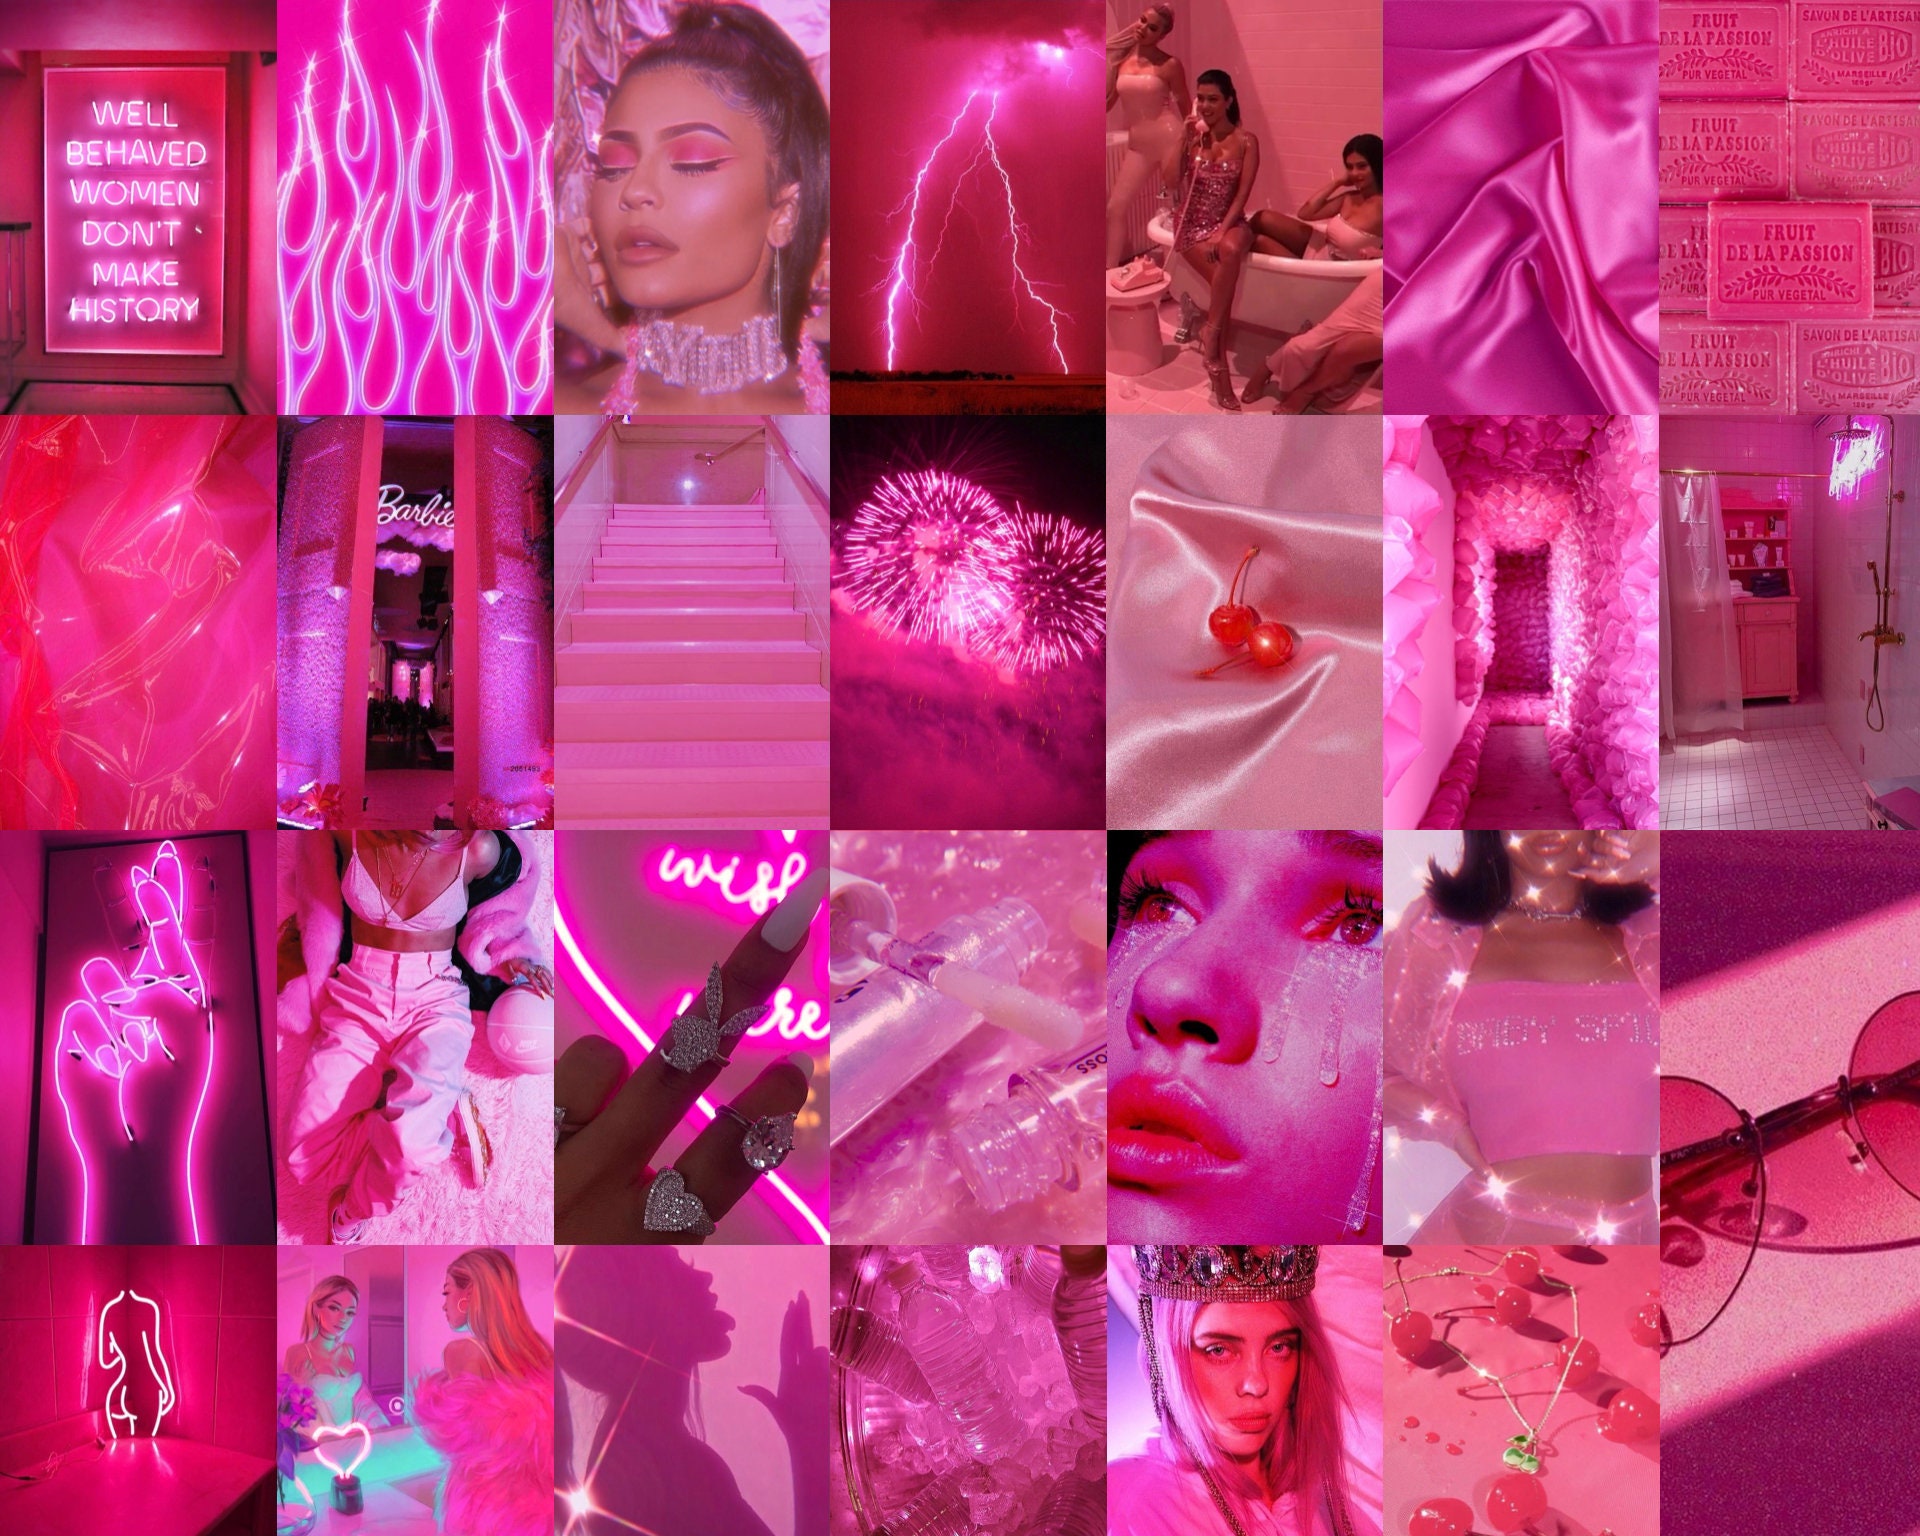 Hot Pink Collage Kit Pink Collage Kit Baddie Aesthetic Pink | Etsy